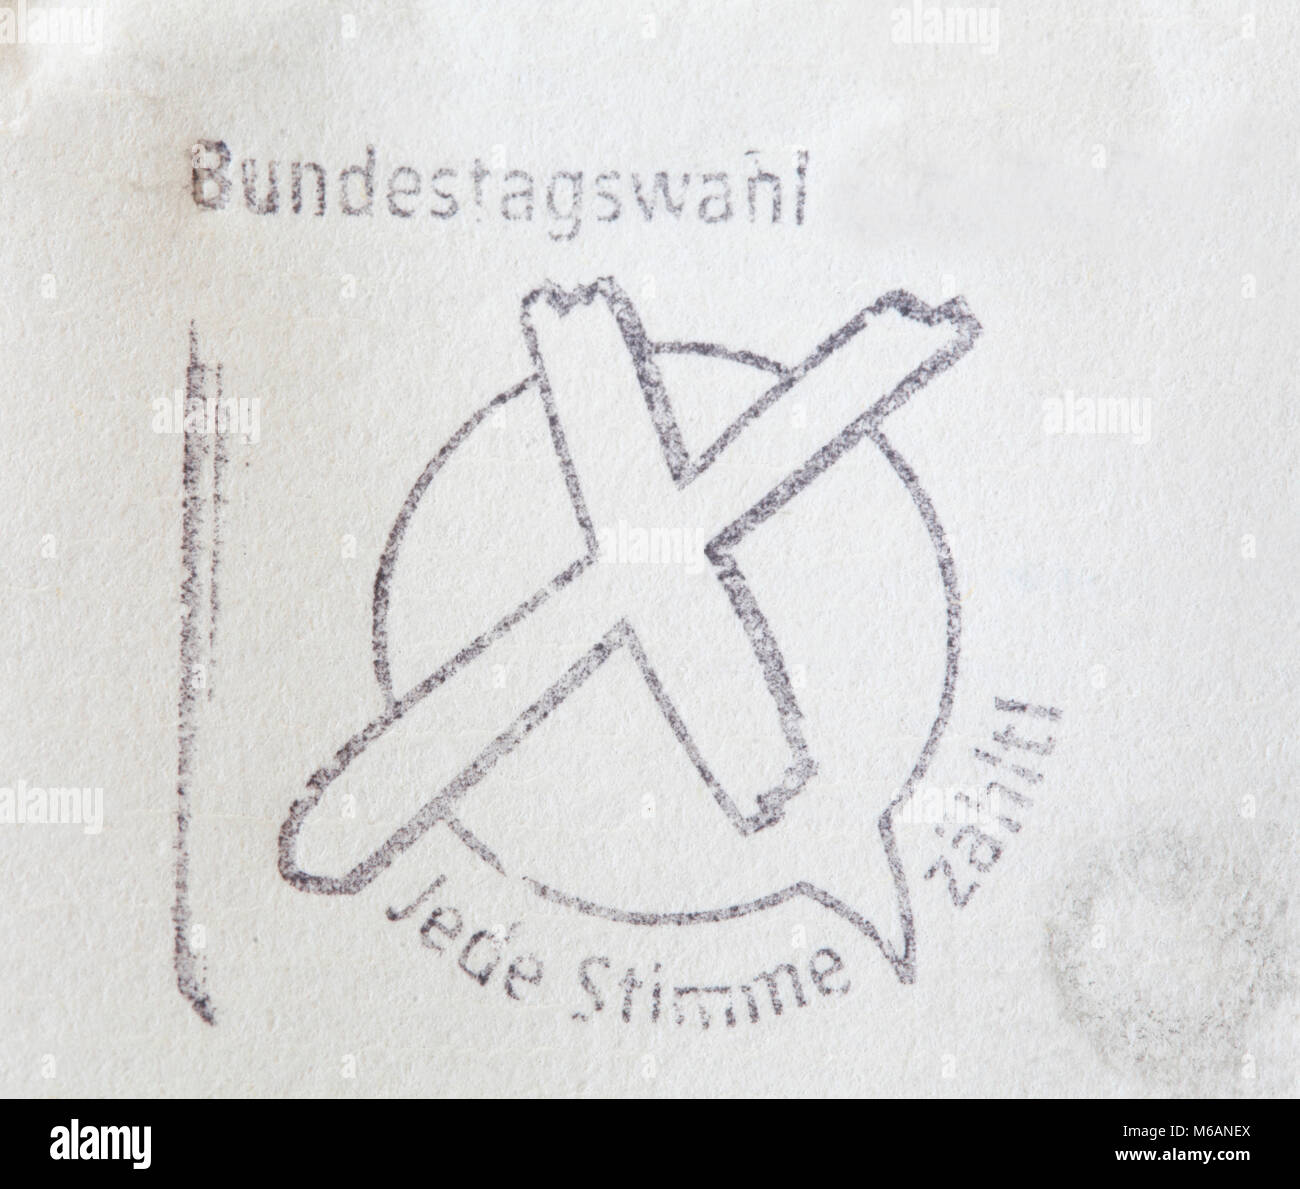 German posrtmark stamp Bundestagswahl on a Envelope Stock Photo